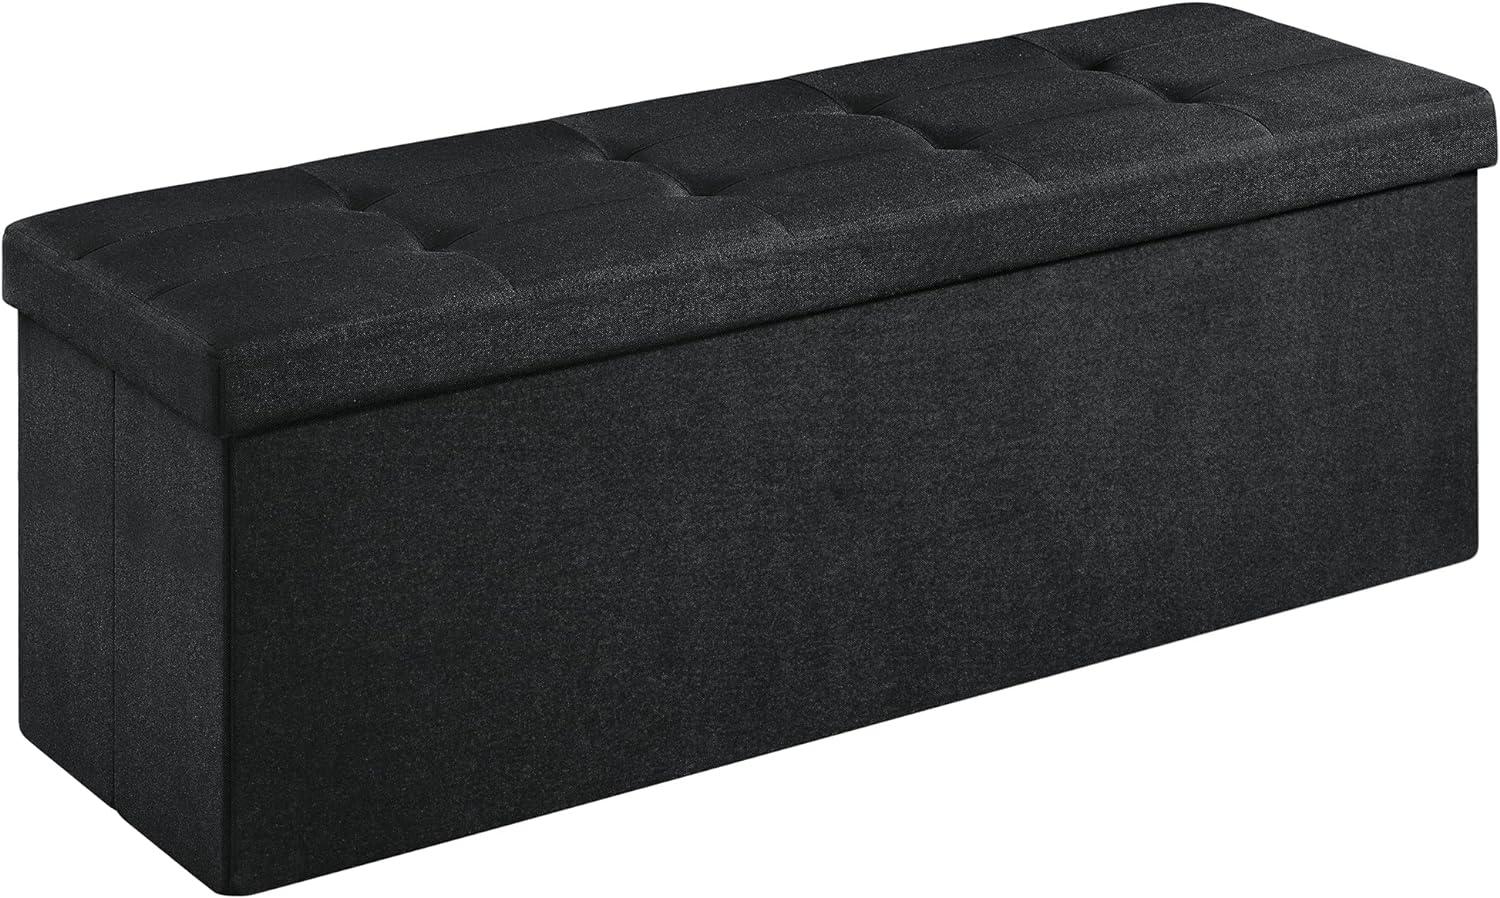 SONGMICS Sitzbank mit Stauraum, Sitztruhe, Aufbewahrungsbox, faltbar, max. statische Belastbarkeit 300 kg, mit Trenngitter aus Metall, 120 L, 110 x 38 x 38 cm, Leinenimitat, schwarz Bild 1